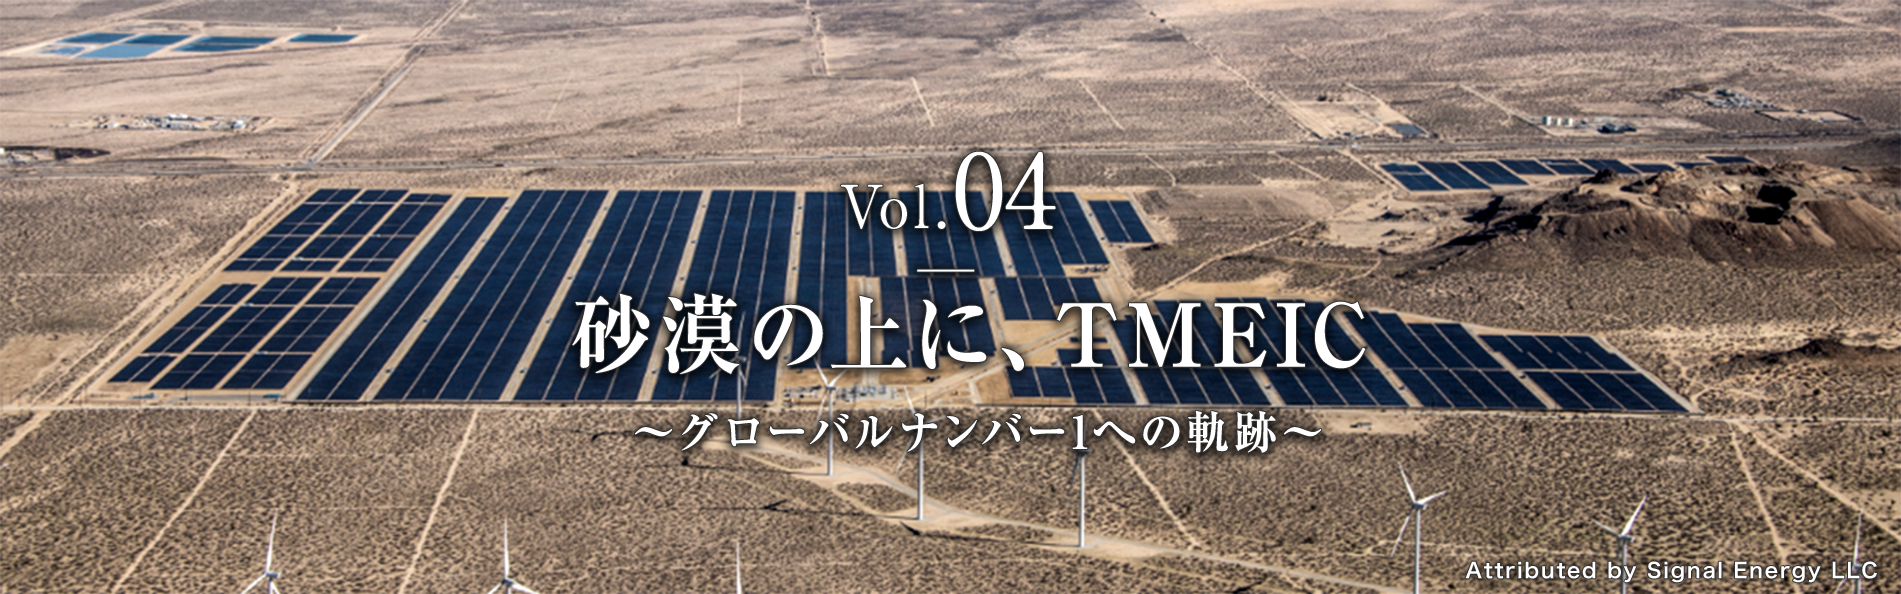 Vol.4 砂漠の上に、TMEIC 〜グローバルナンバー1への軌跡〜